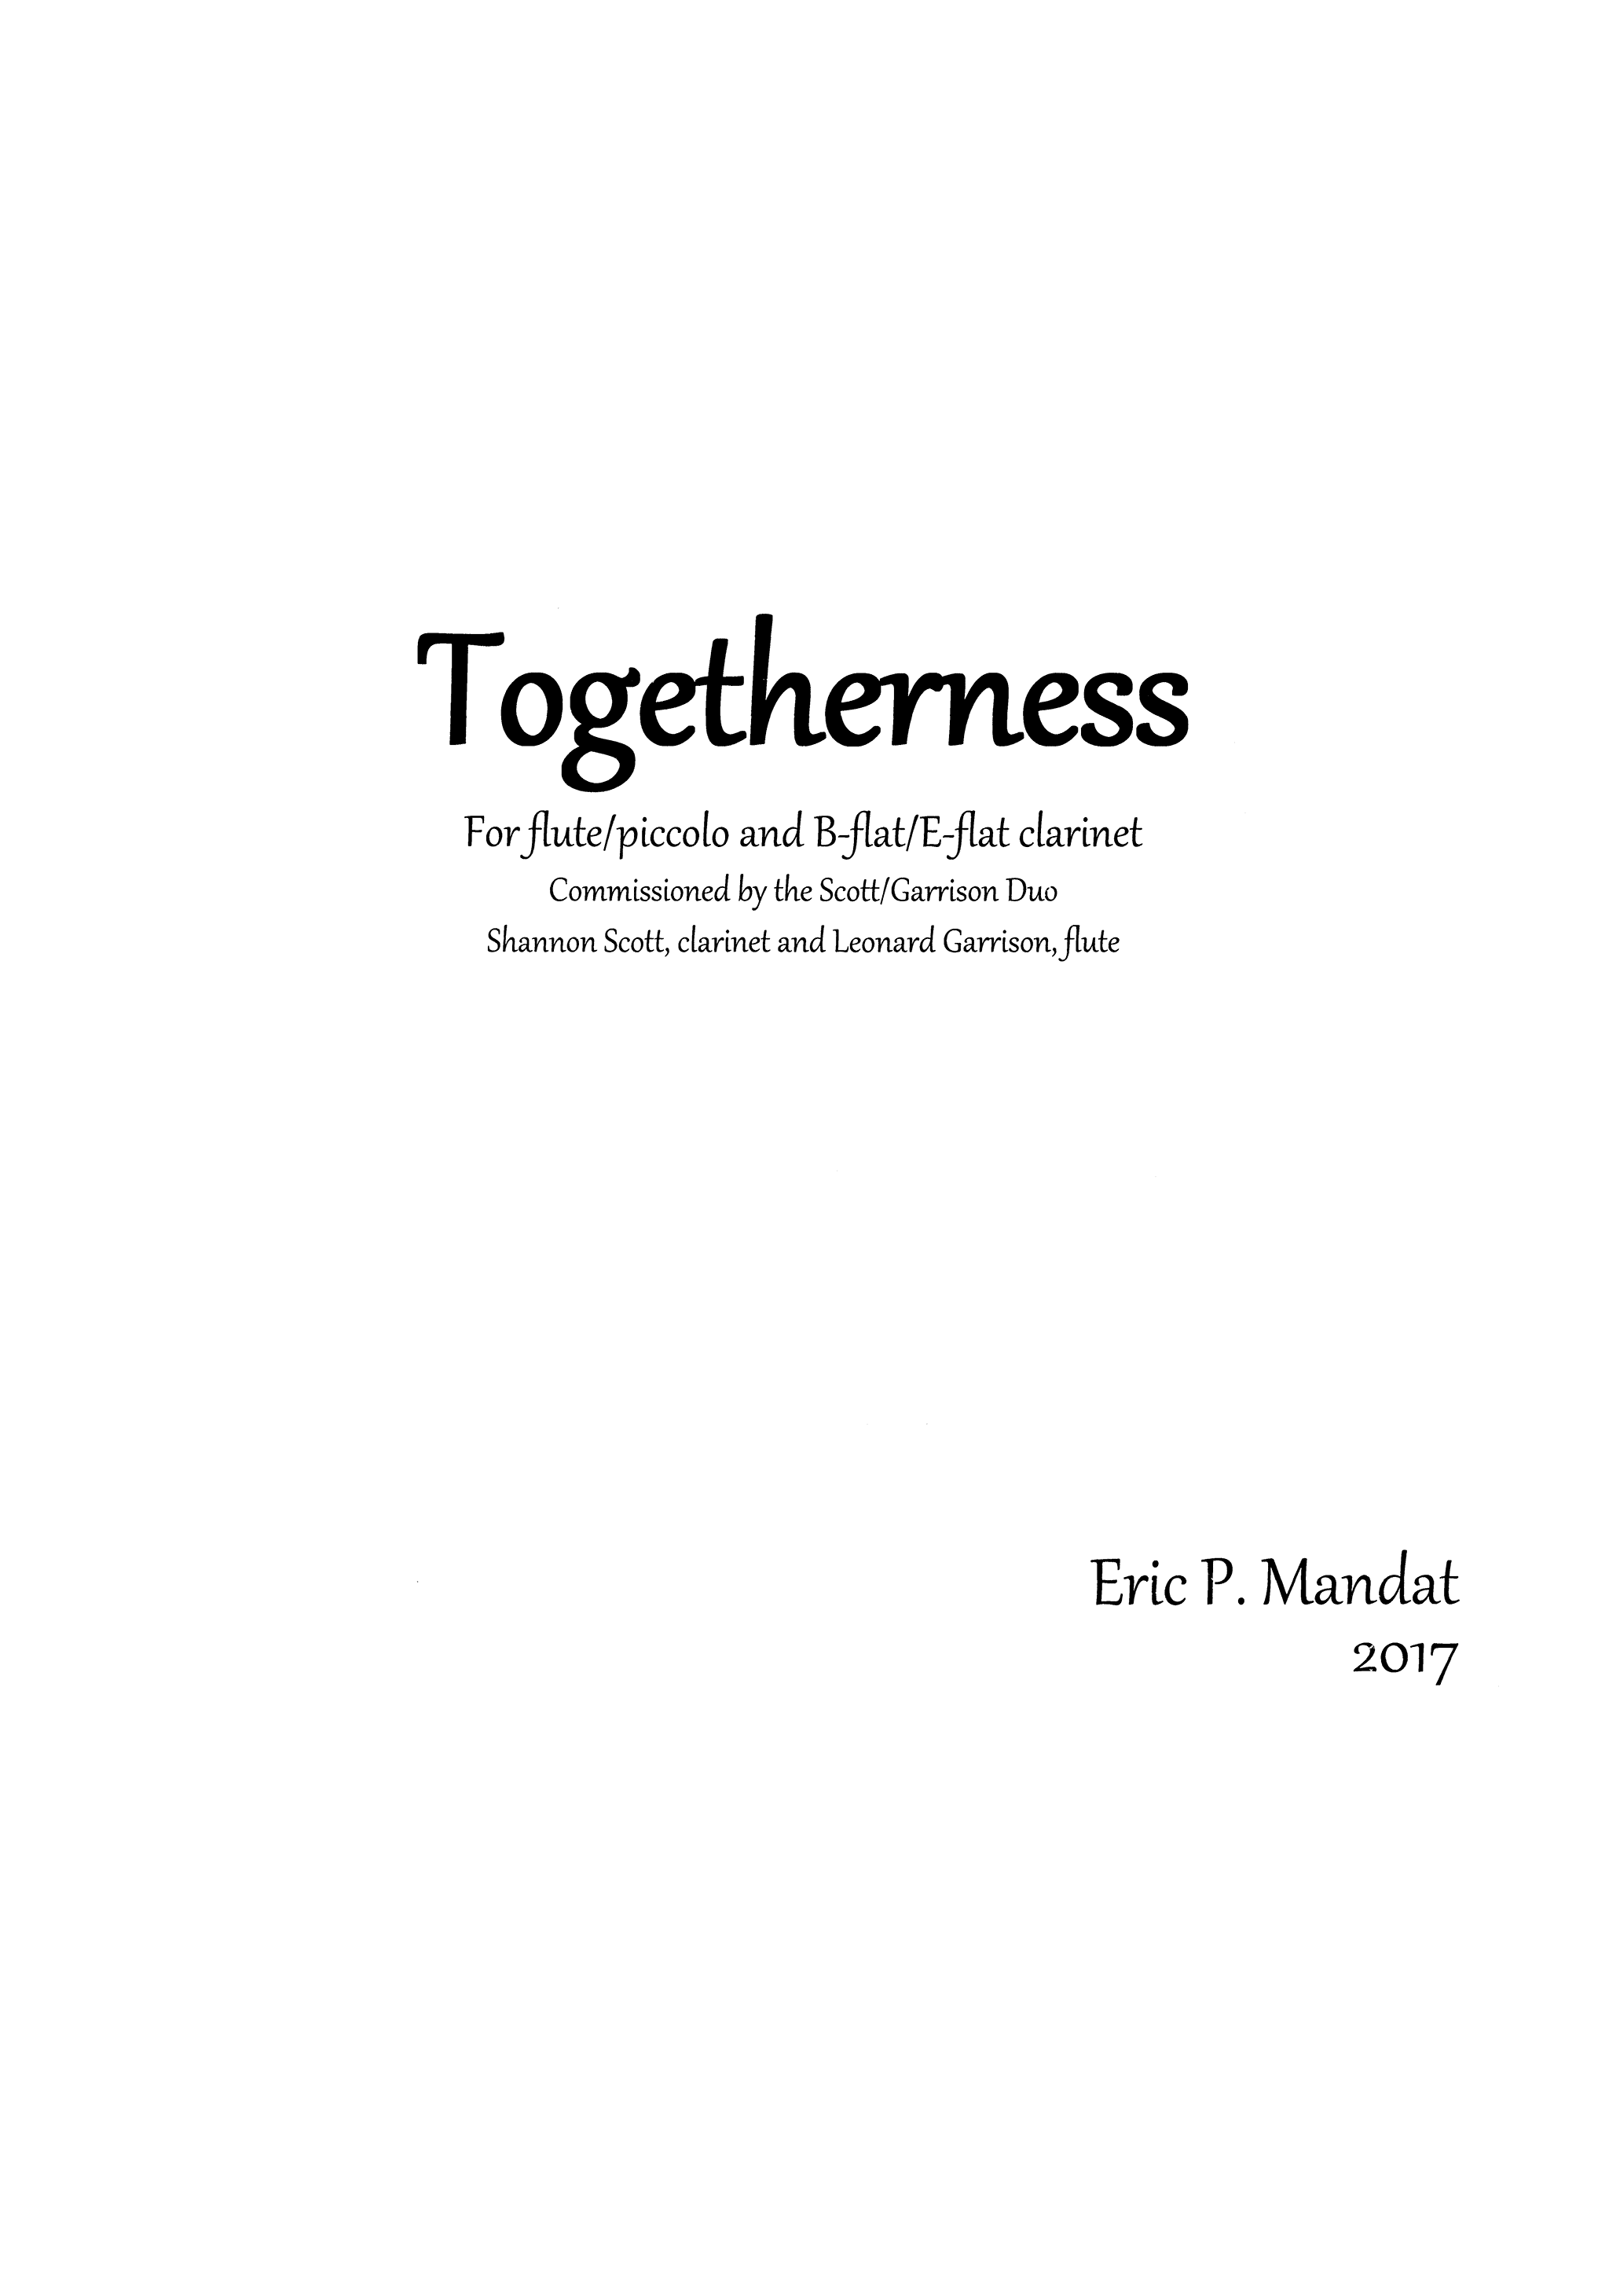 Mandat Togetherness Cover